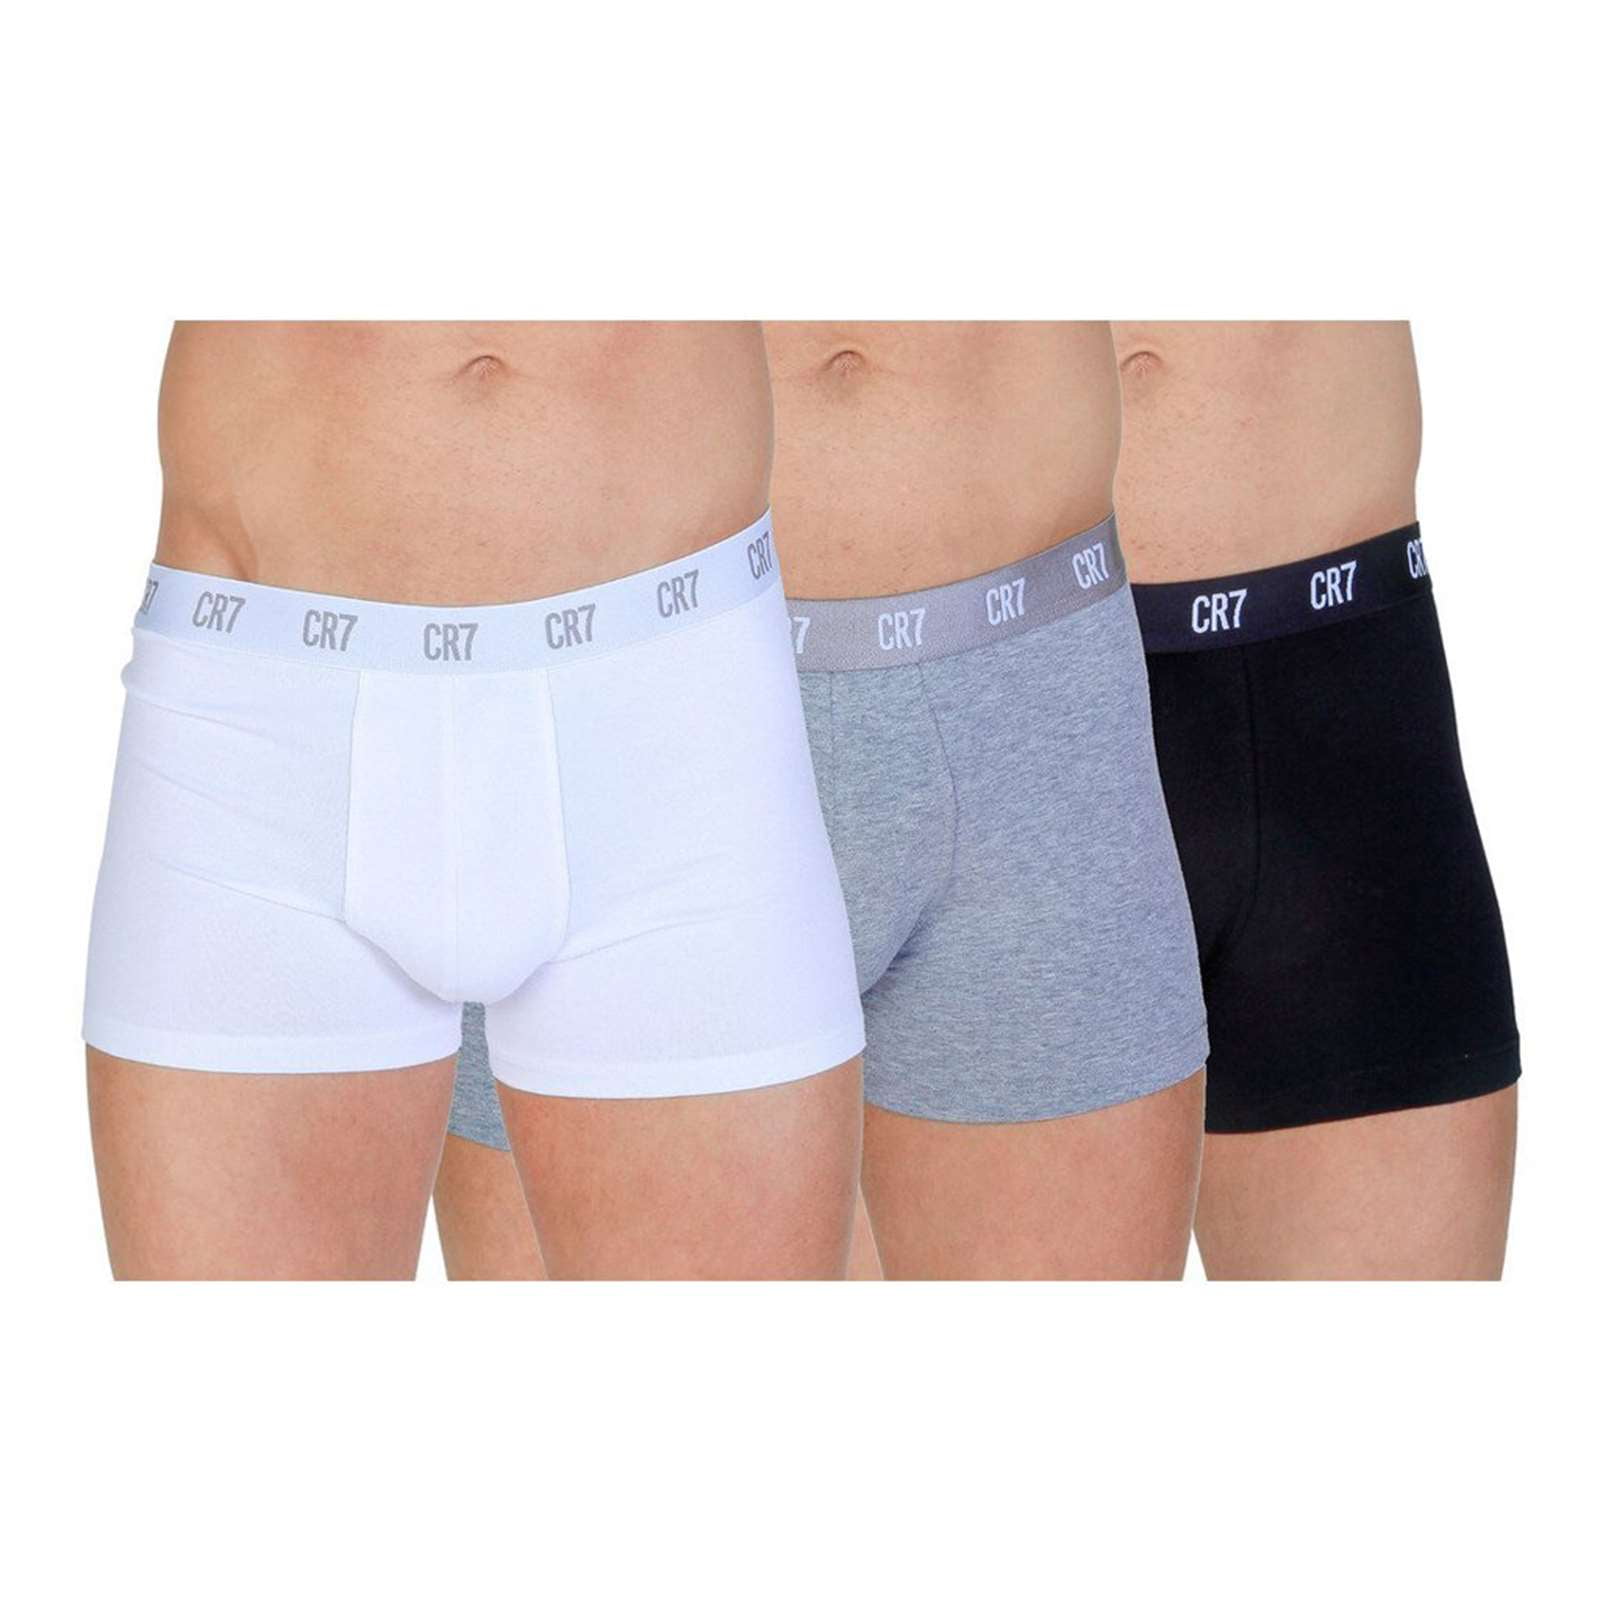 Cristiano Ronaldo Cr7 Men's Boxer Shorts Underwear in 2-Pack (L